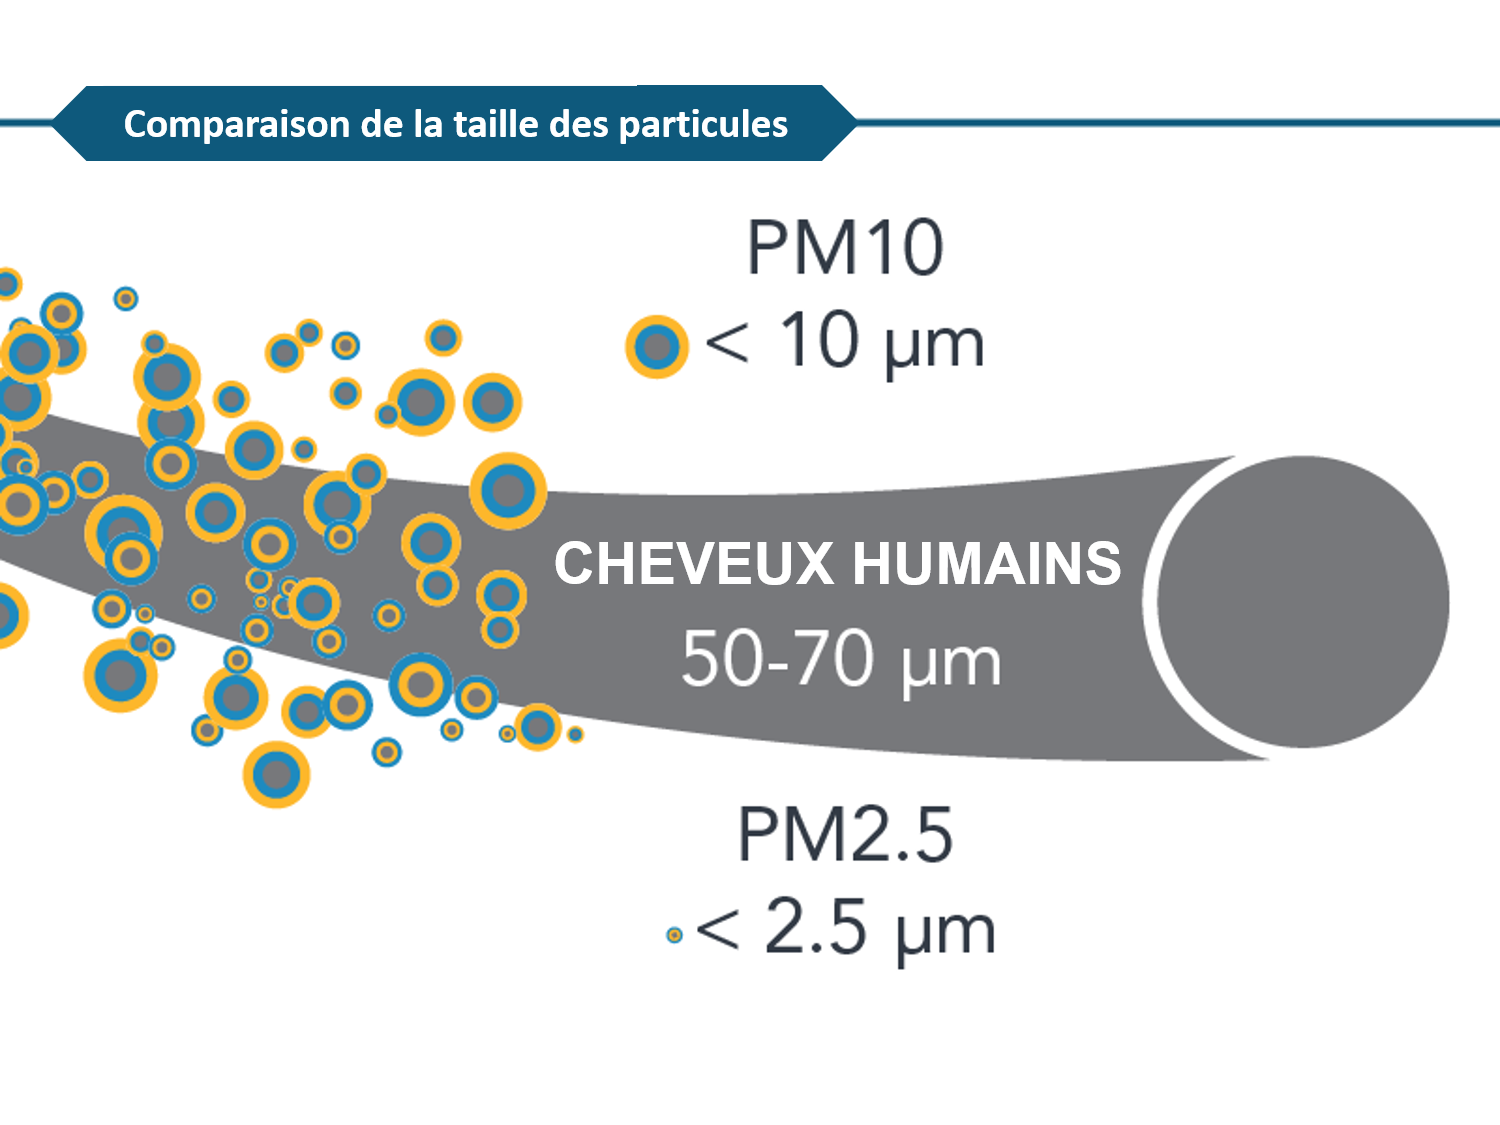 Un diagramme montrant la différence de tailles entre les PM10, les cheveux humains et les PM2,5